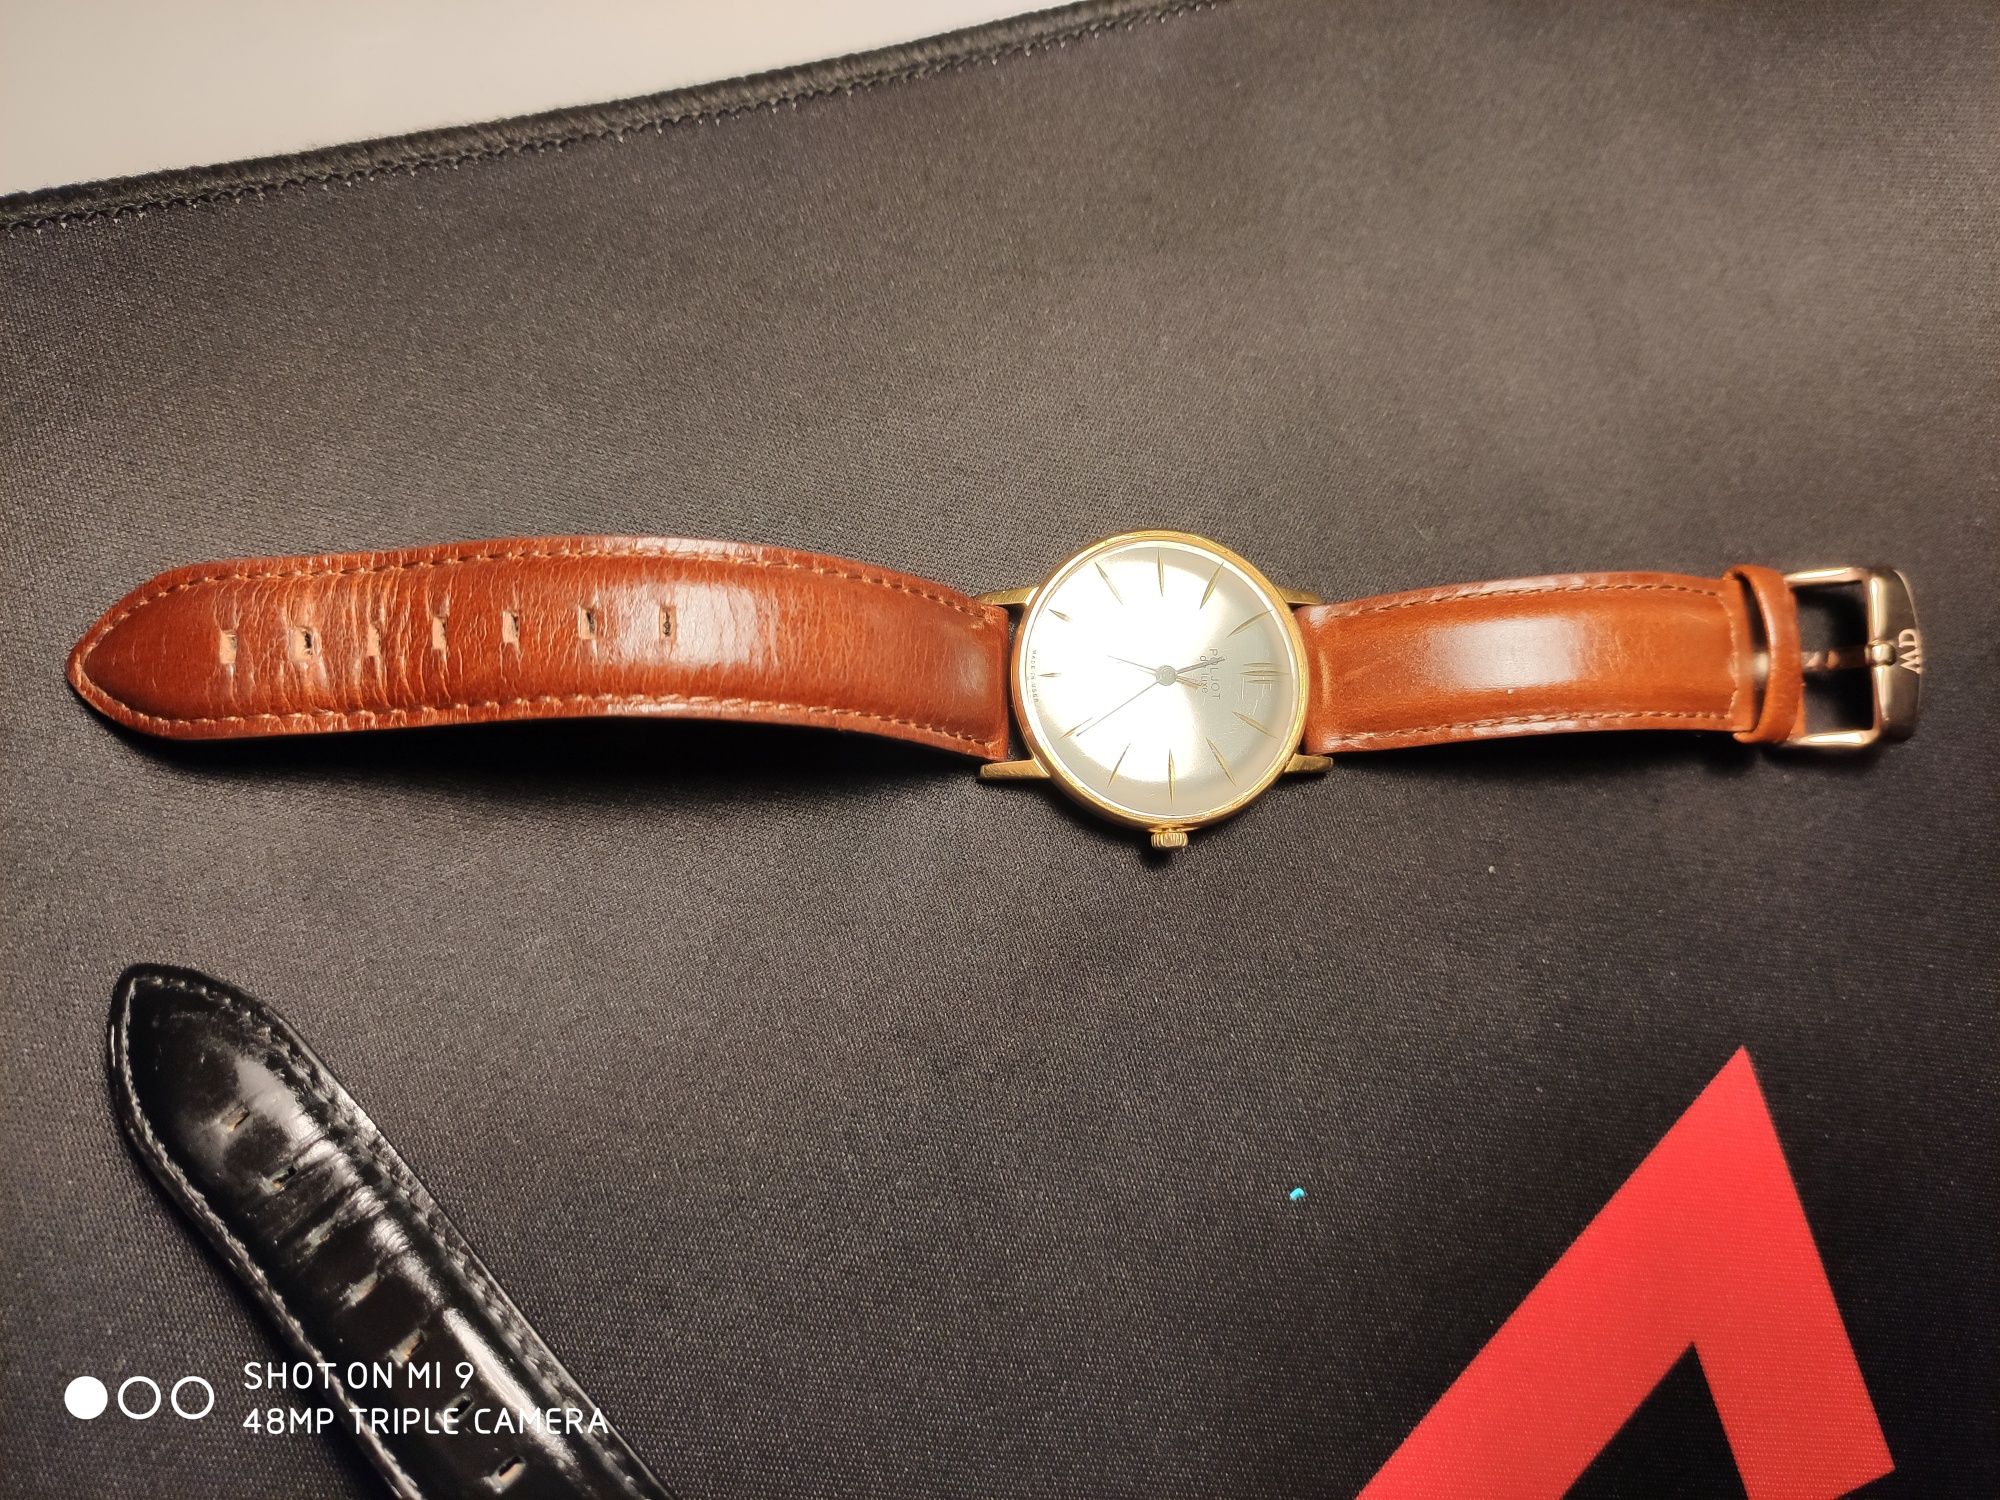 Zegarek Poljot De Luxe 23 Edycja Kolekcjonerska